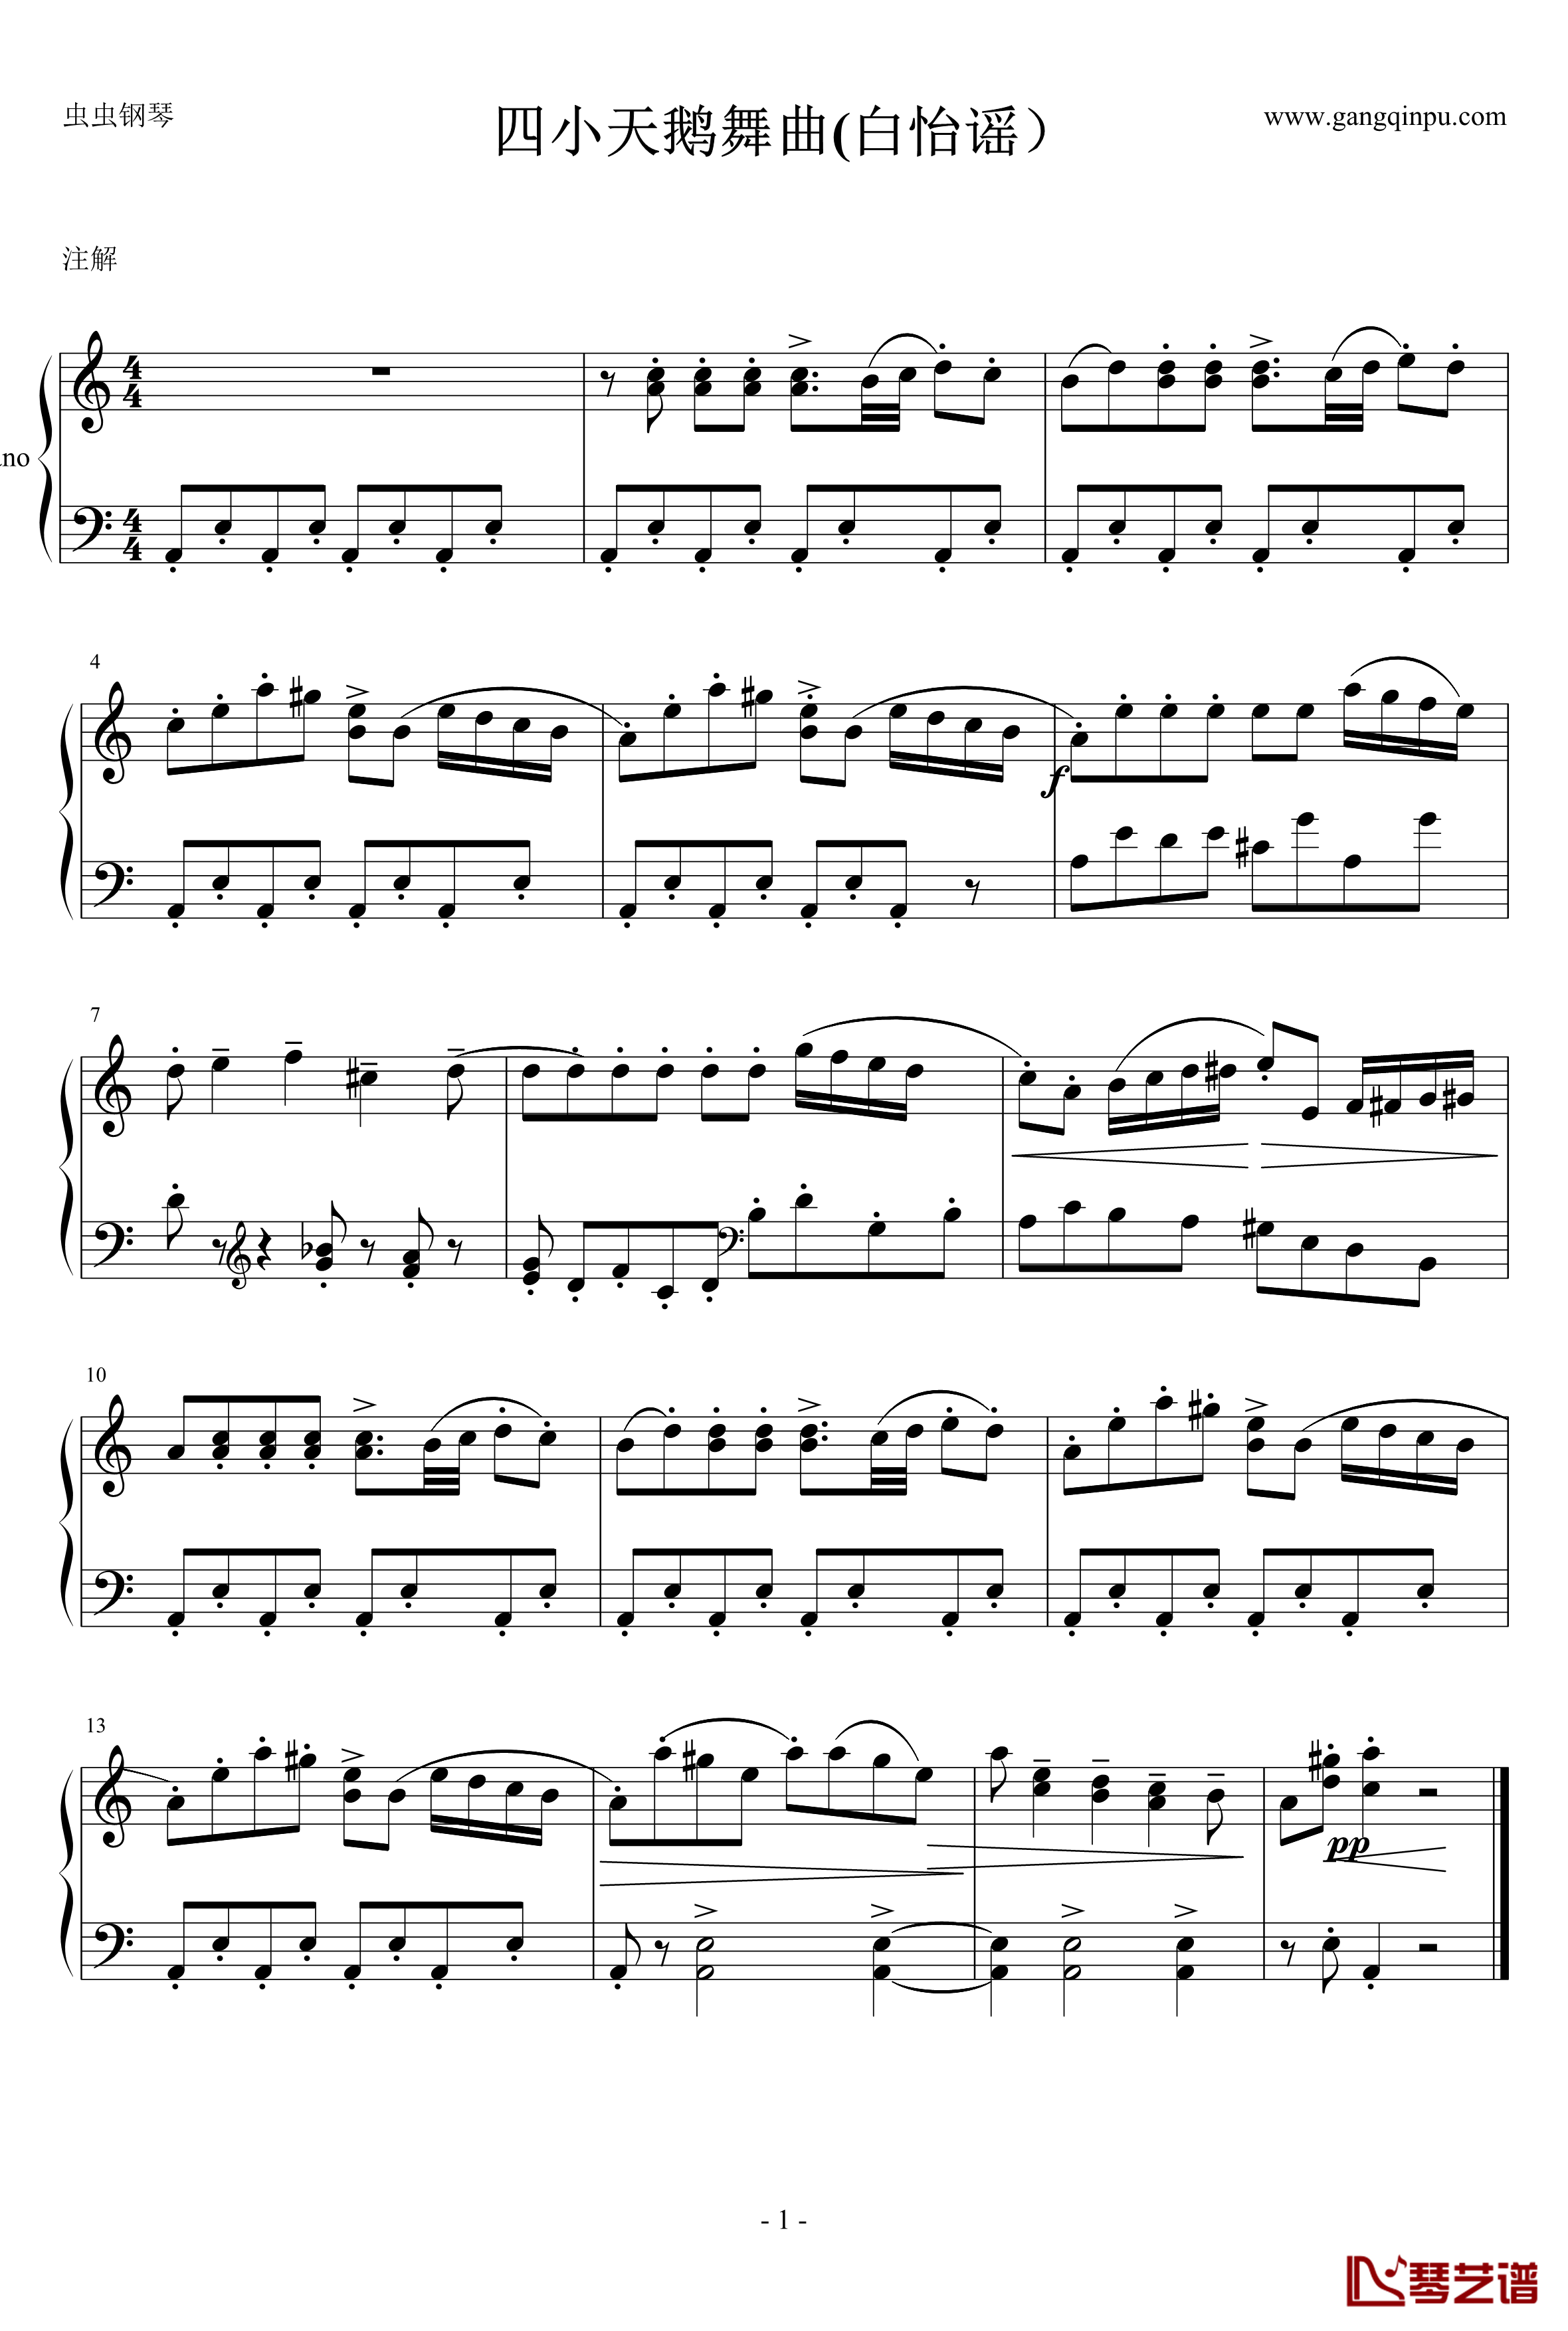 四小天鹅舞曲钢琴谱-世界名曲1